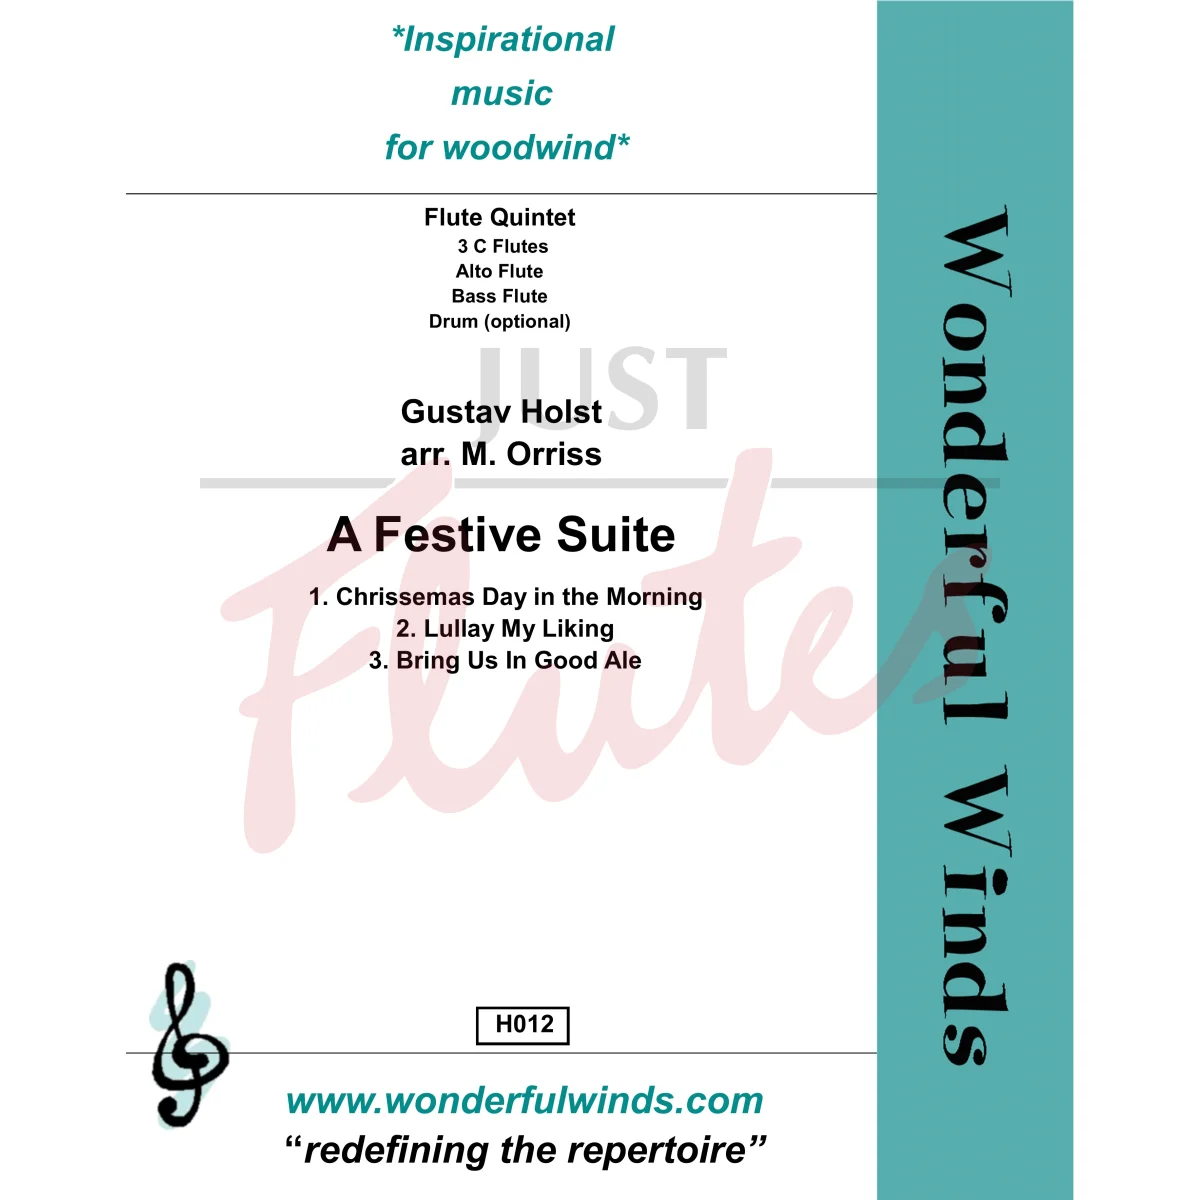 A Festive Suite for Flute Quintet